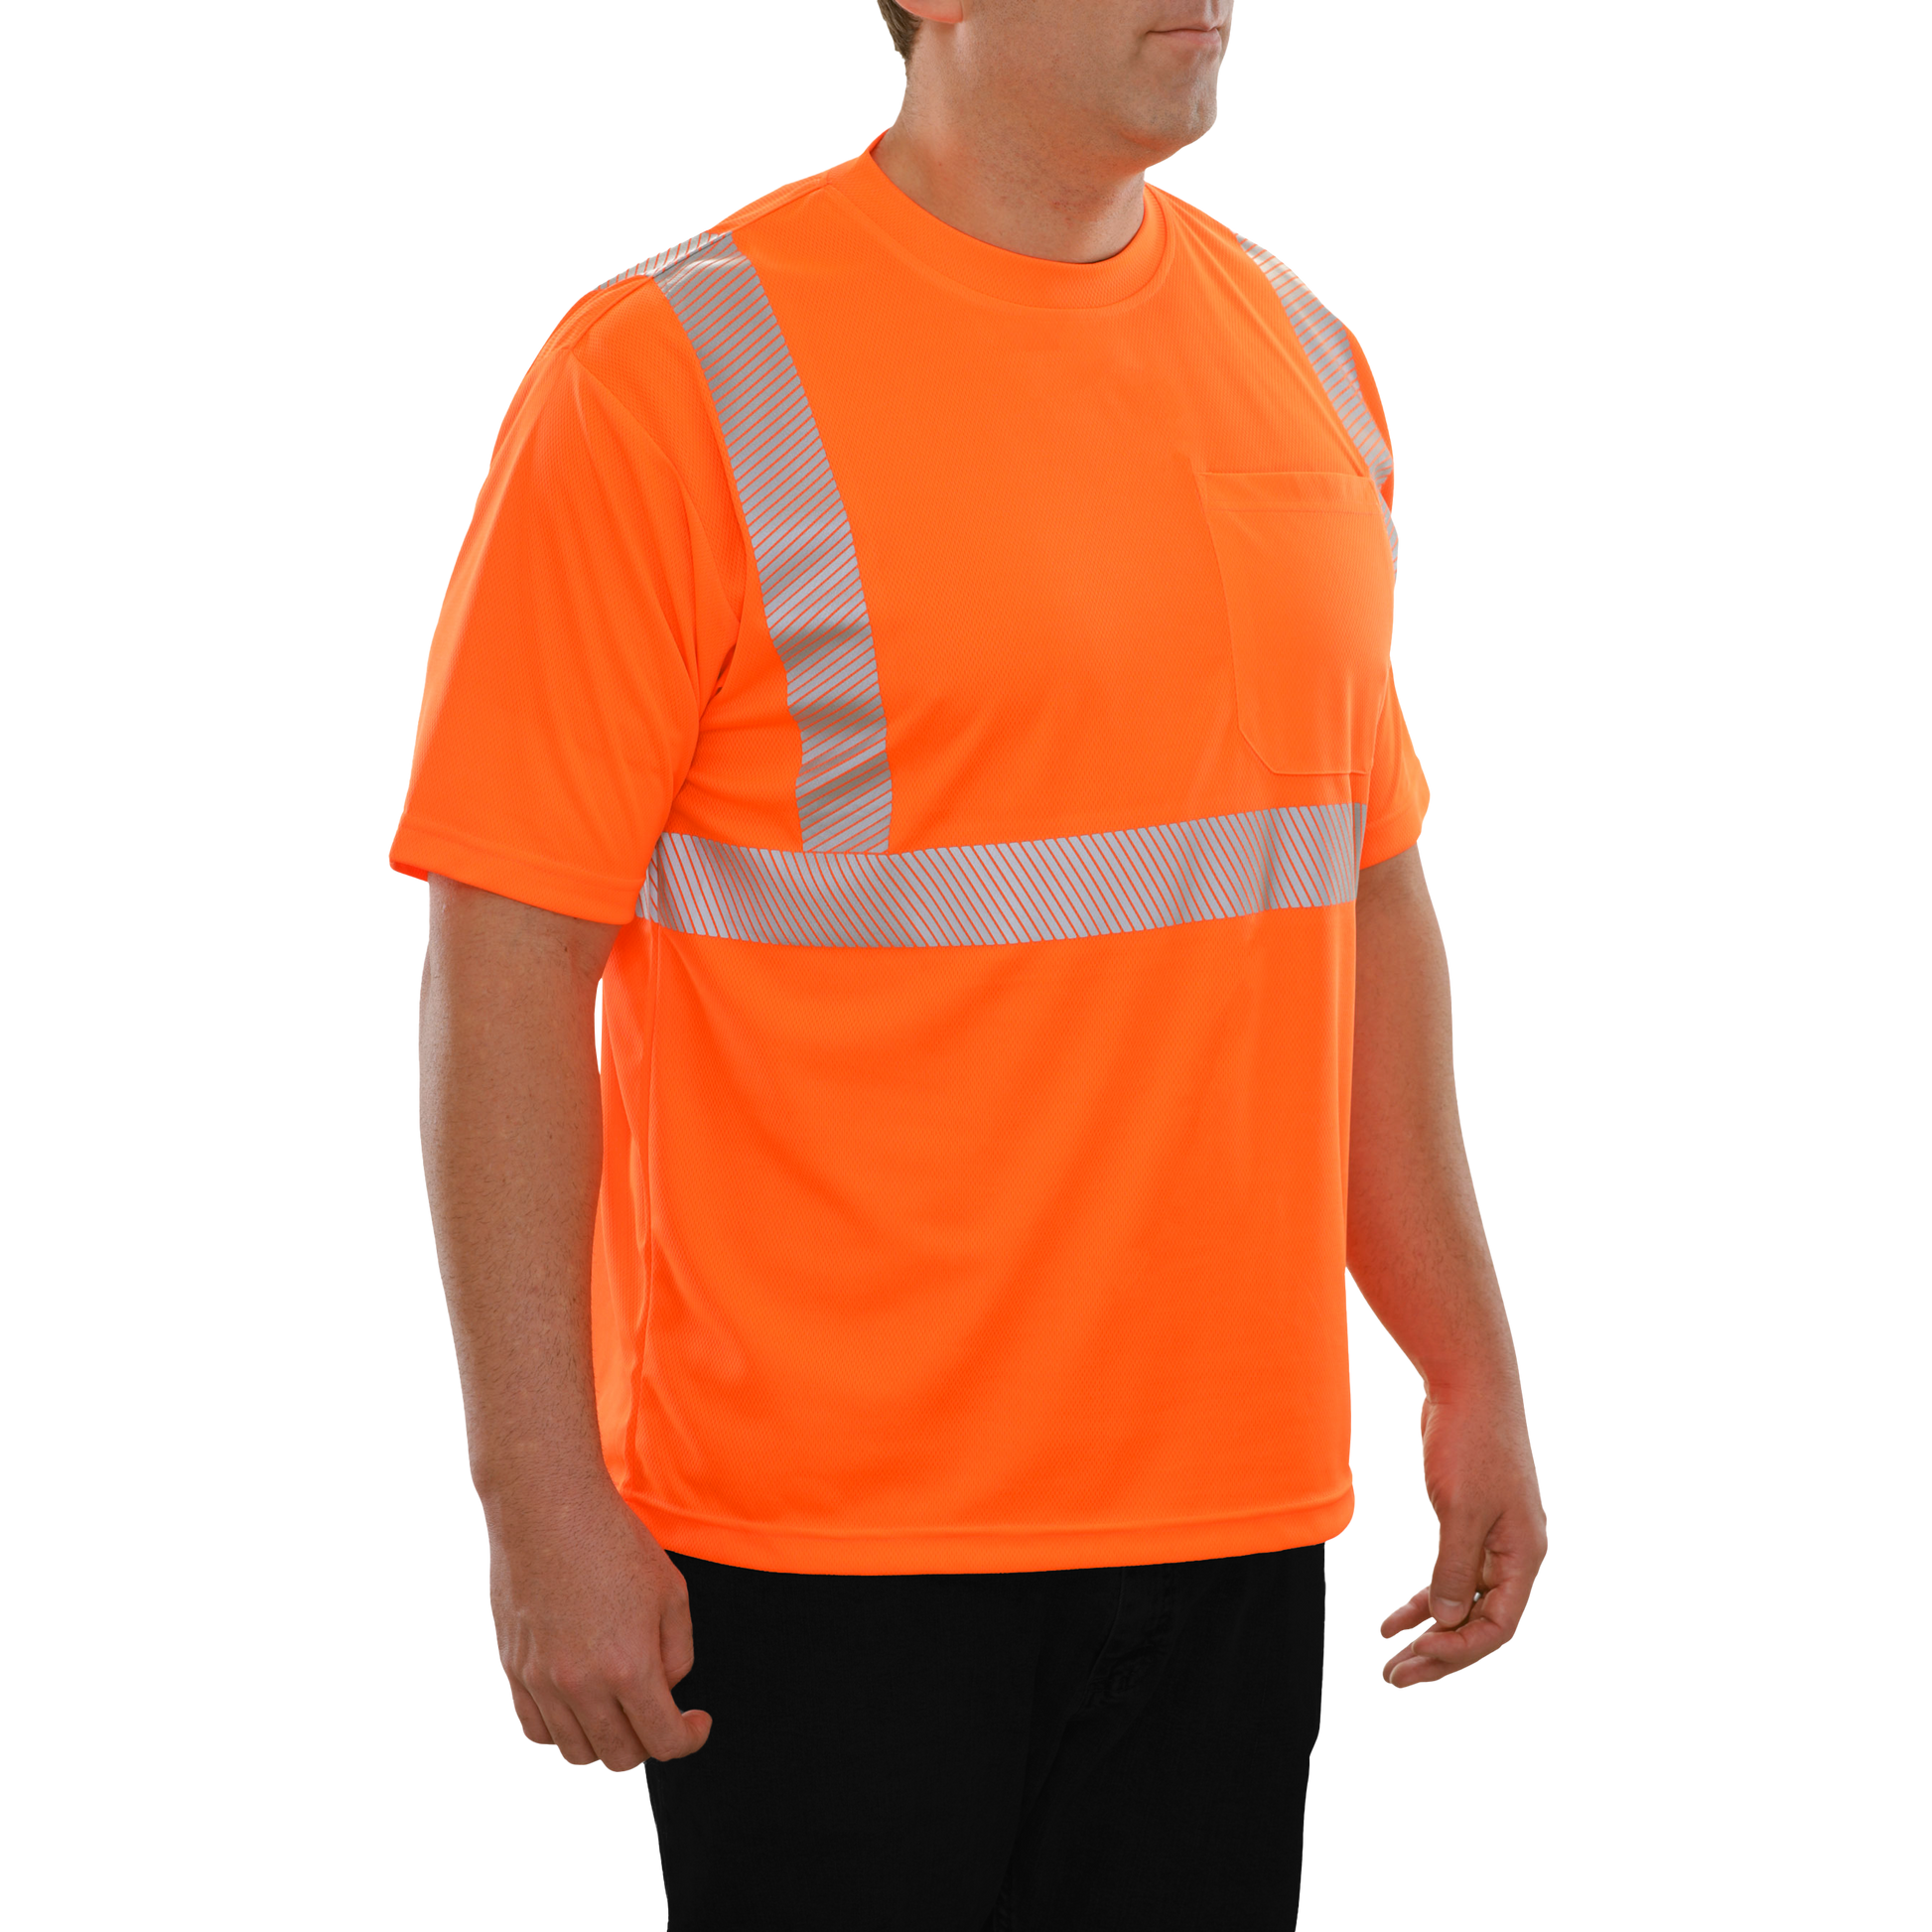 102CTOR Hi-Vis Orange Birdseye Pocket Safety Shirt with Comfort Trim by 3MTM